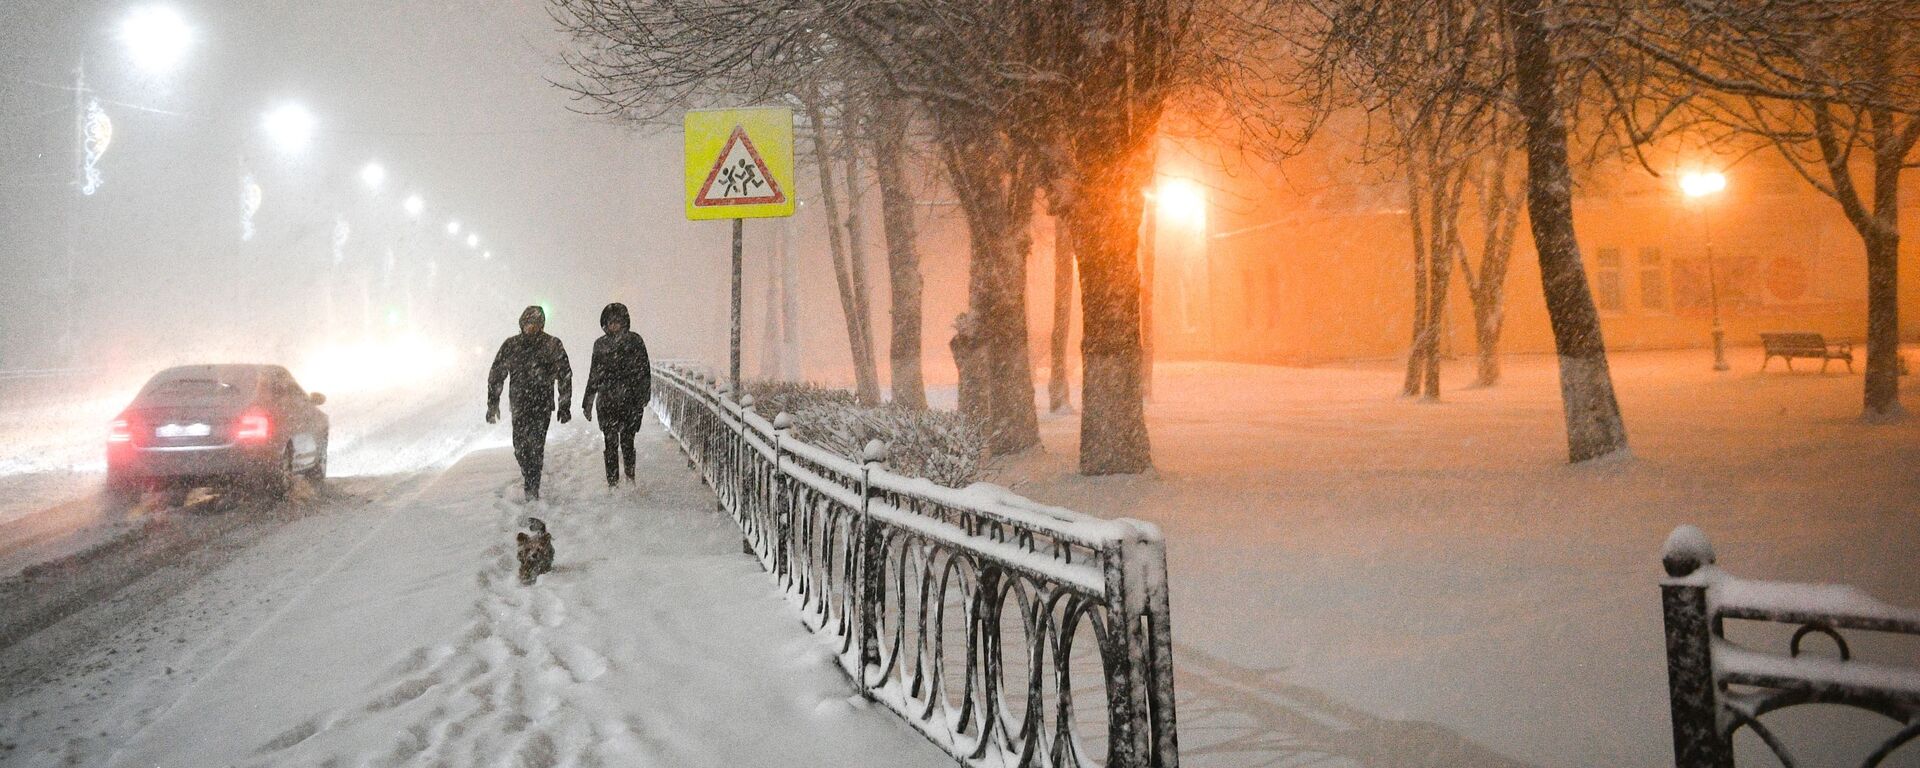 Люди идут по улице во время снегопада - Sputnik Латвия, 1920, 02.02.2021